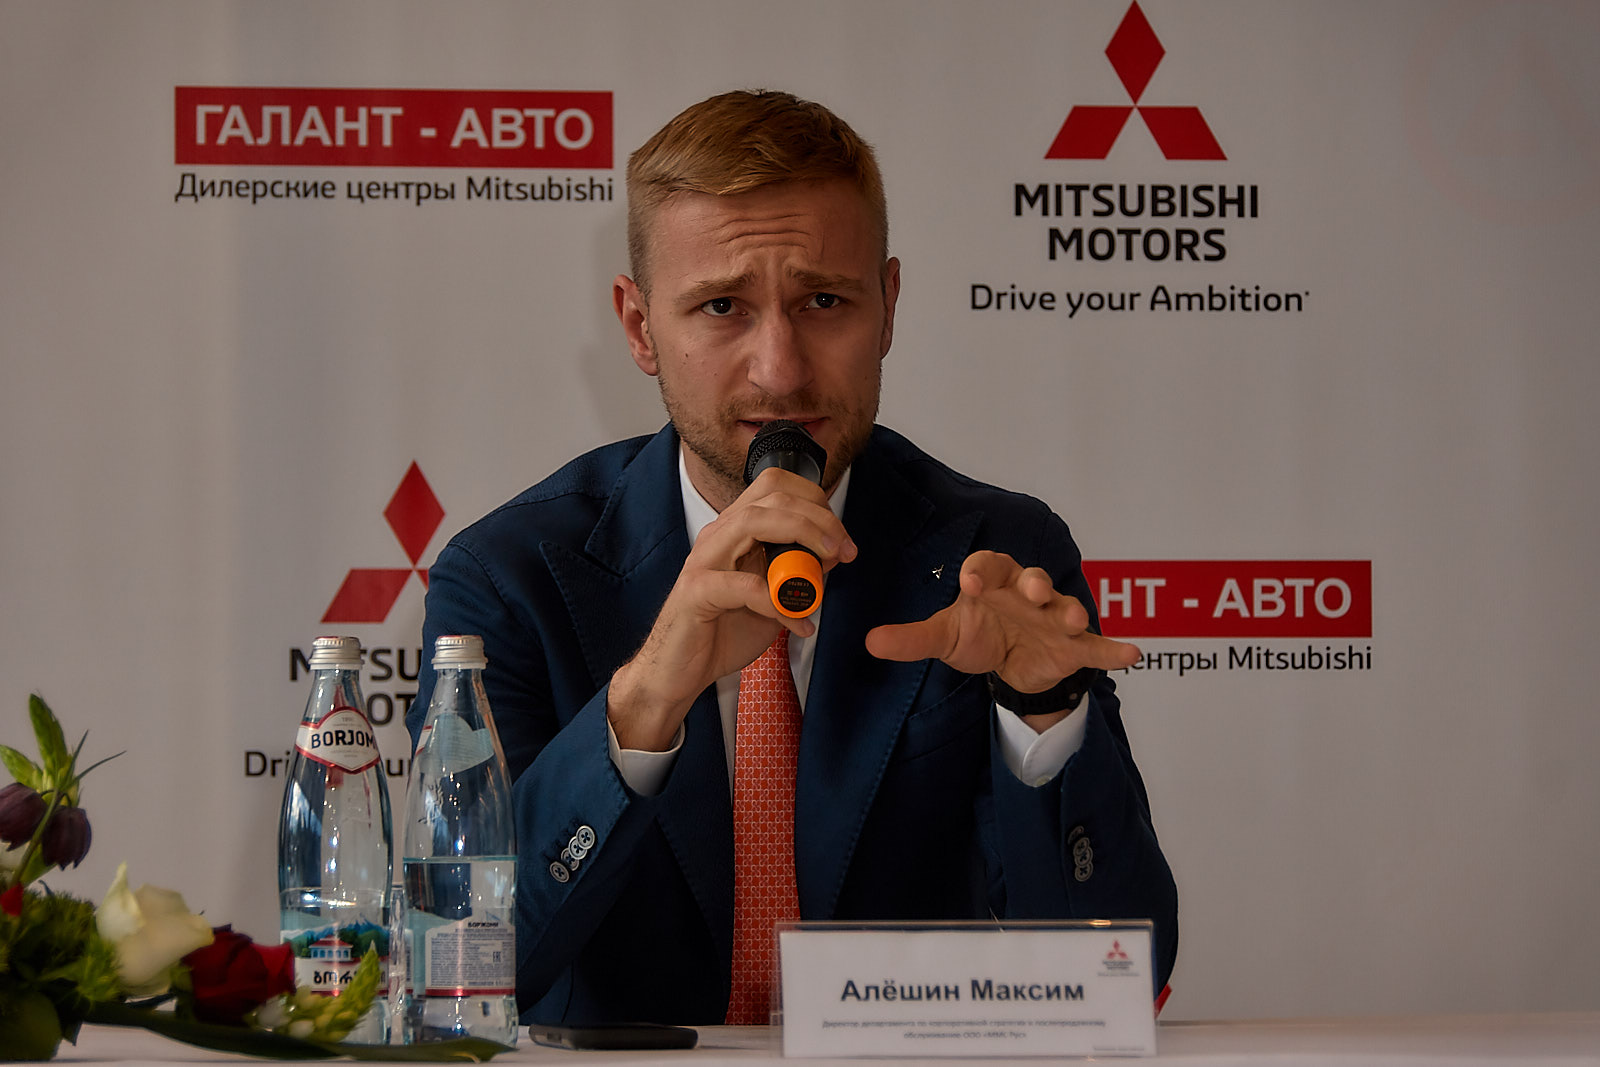 Максим Алешин, Директор департамента по корпоративной стратегии и послепродажному обслуживанию ООО "ММС РУС"